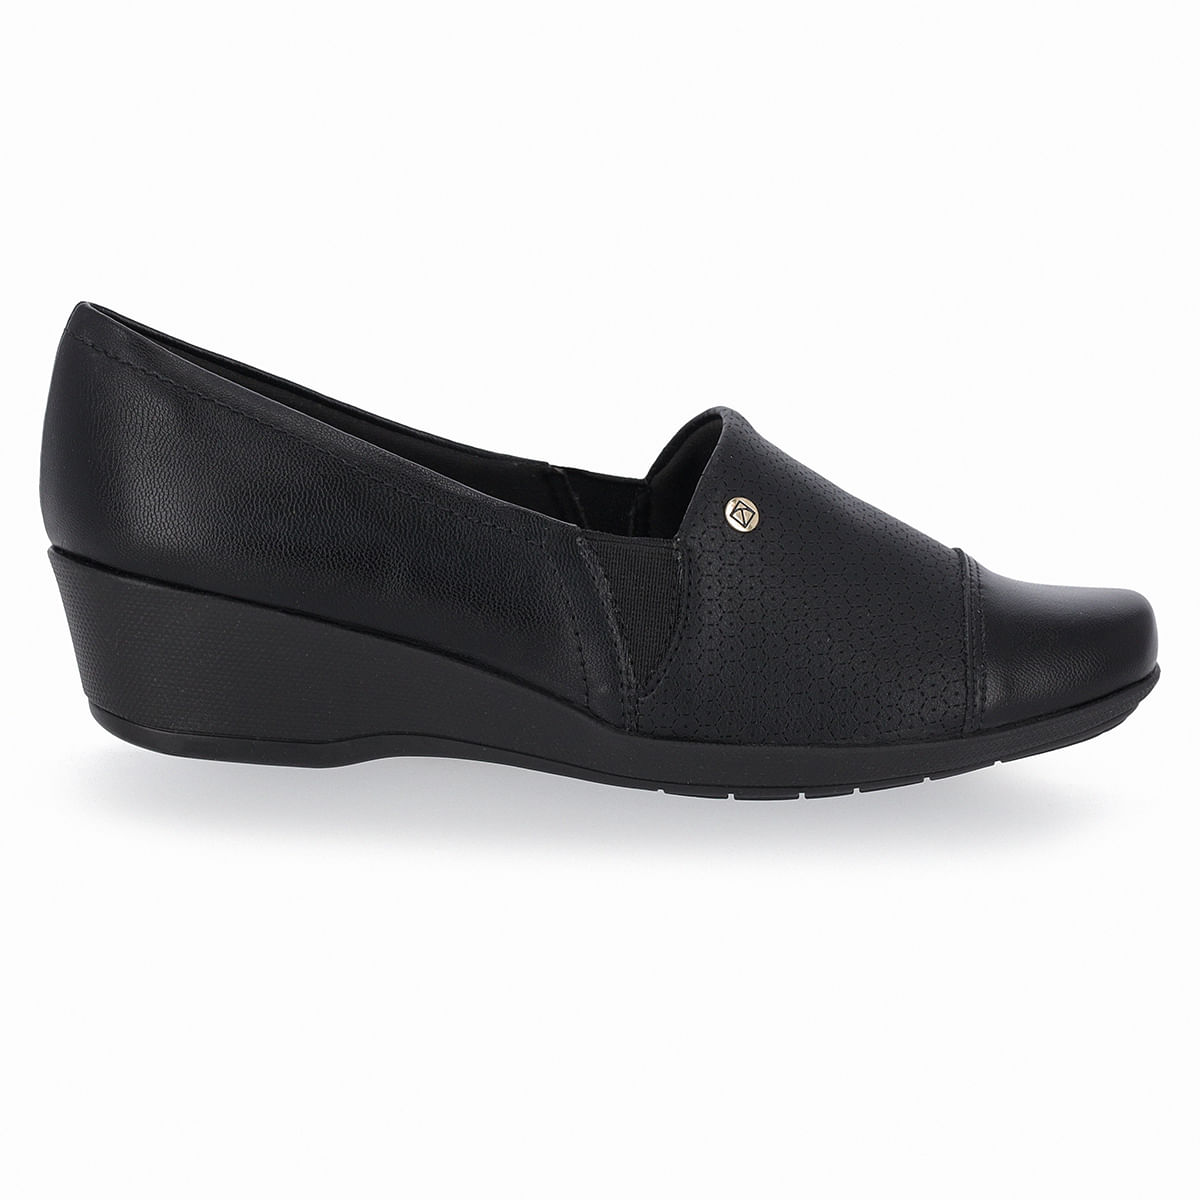 Sapatos Femininos: a melhor escolha para seu estilo, Piccadilly -  PICCADILLY